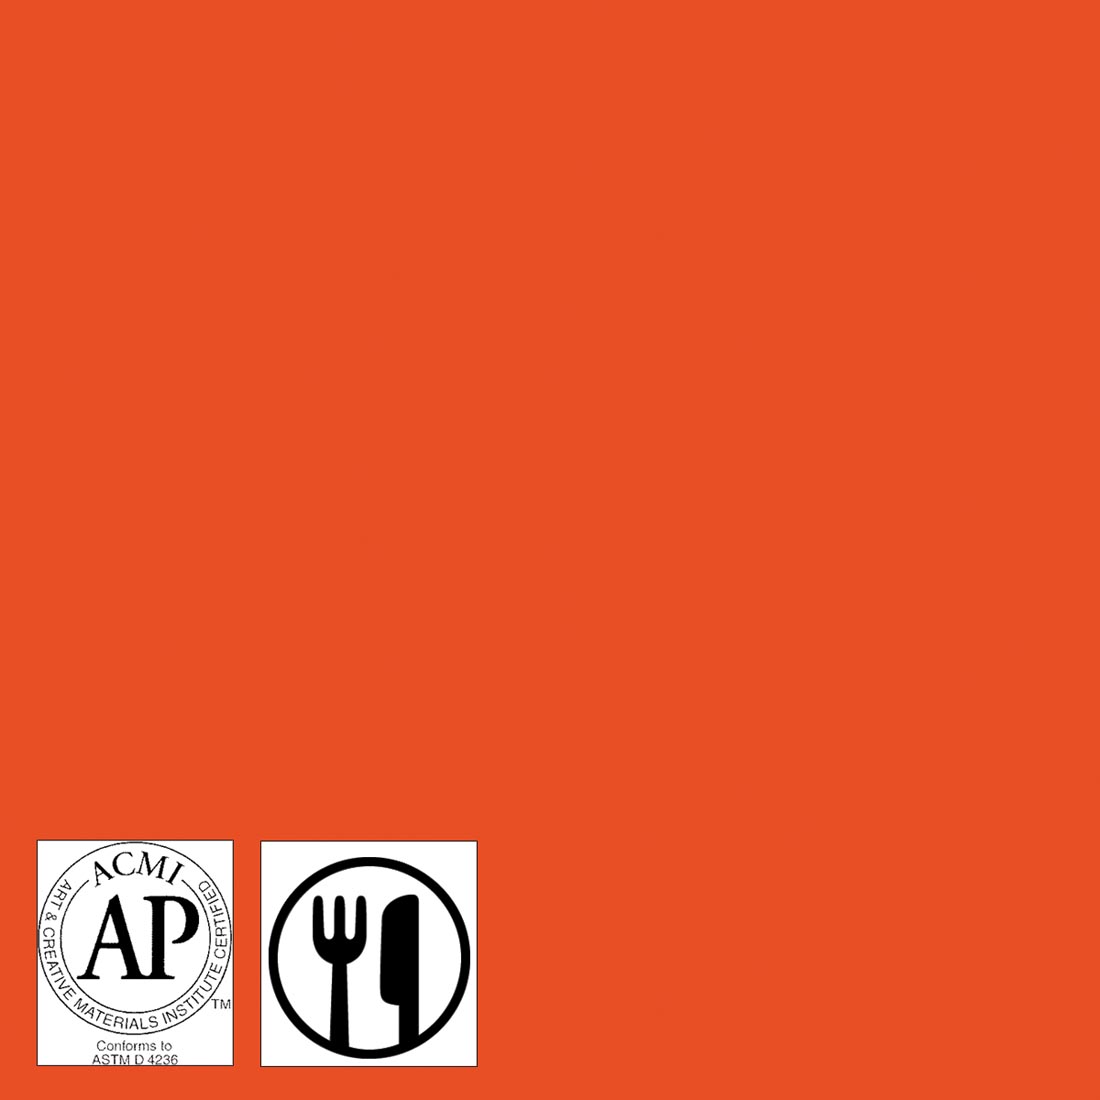 Color sample of Orange-A-Peel Stroke & Coat Wonderglaze with symbols for AP Seal and food safe